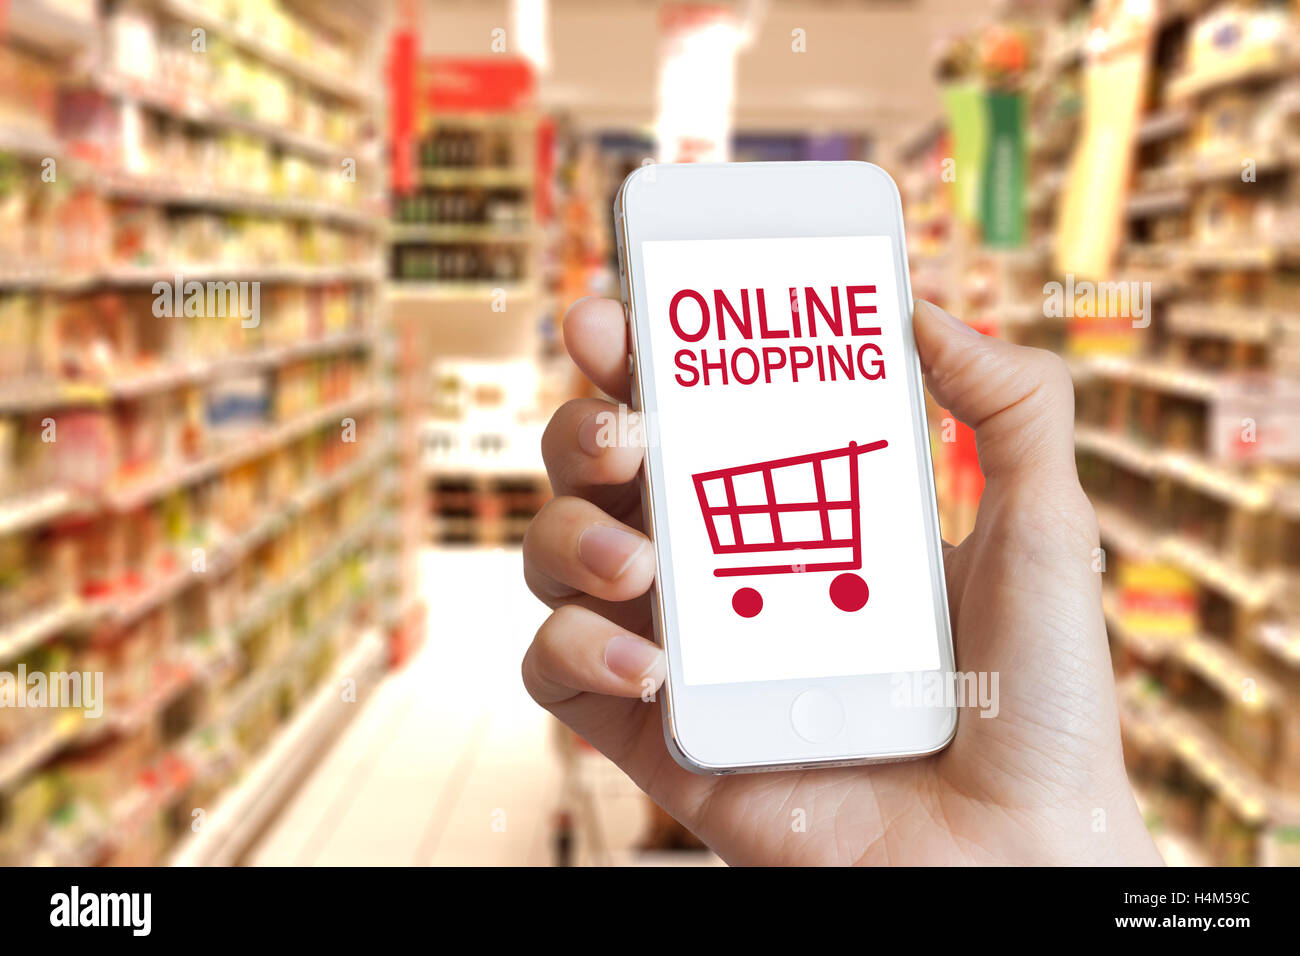 Ofertes i compra de comestibles en línia